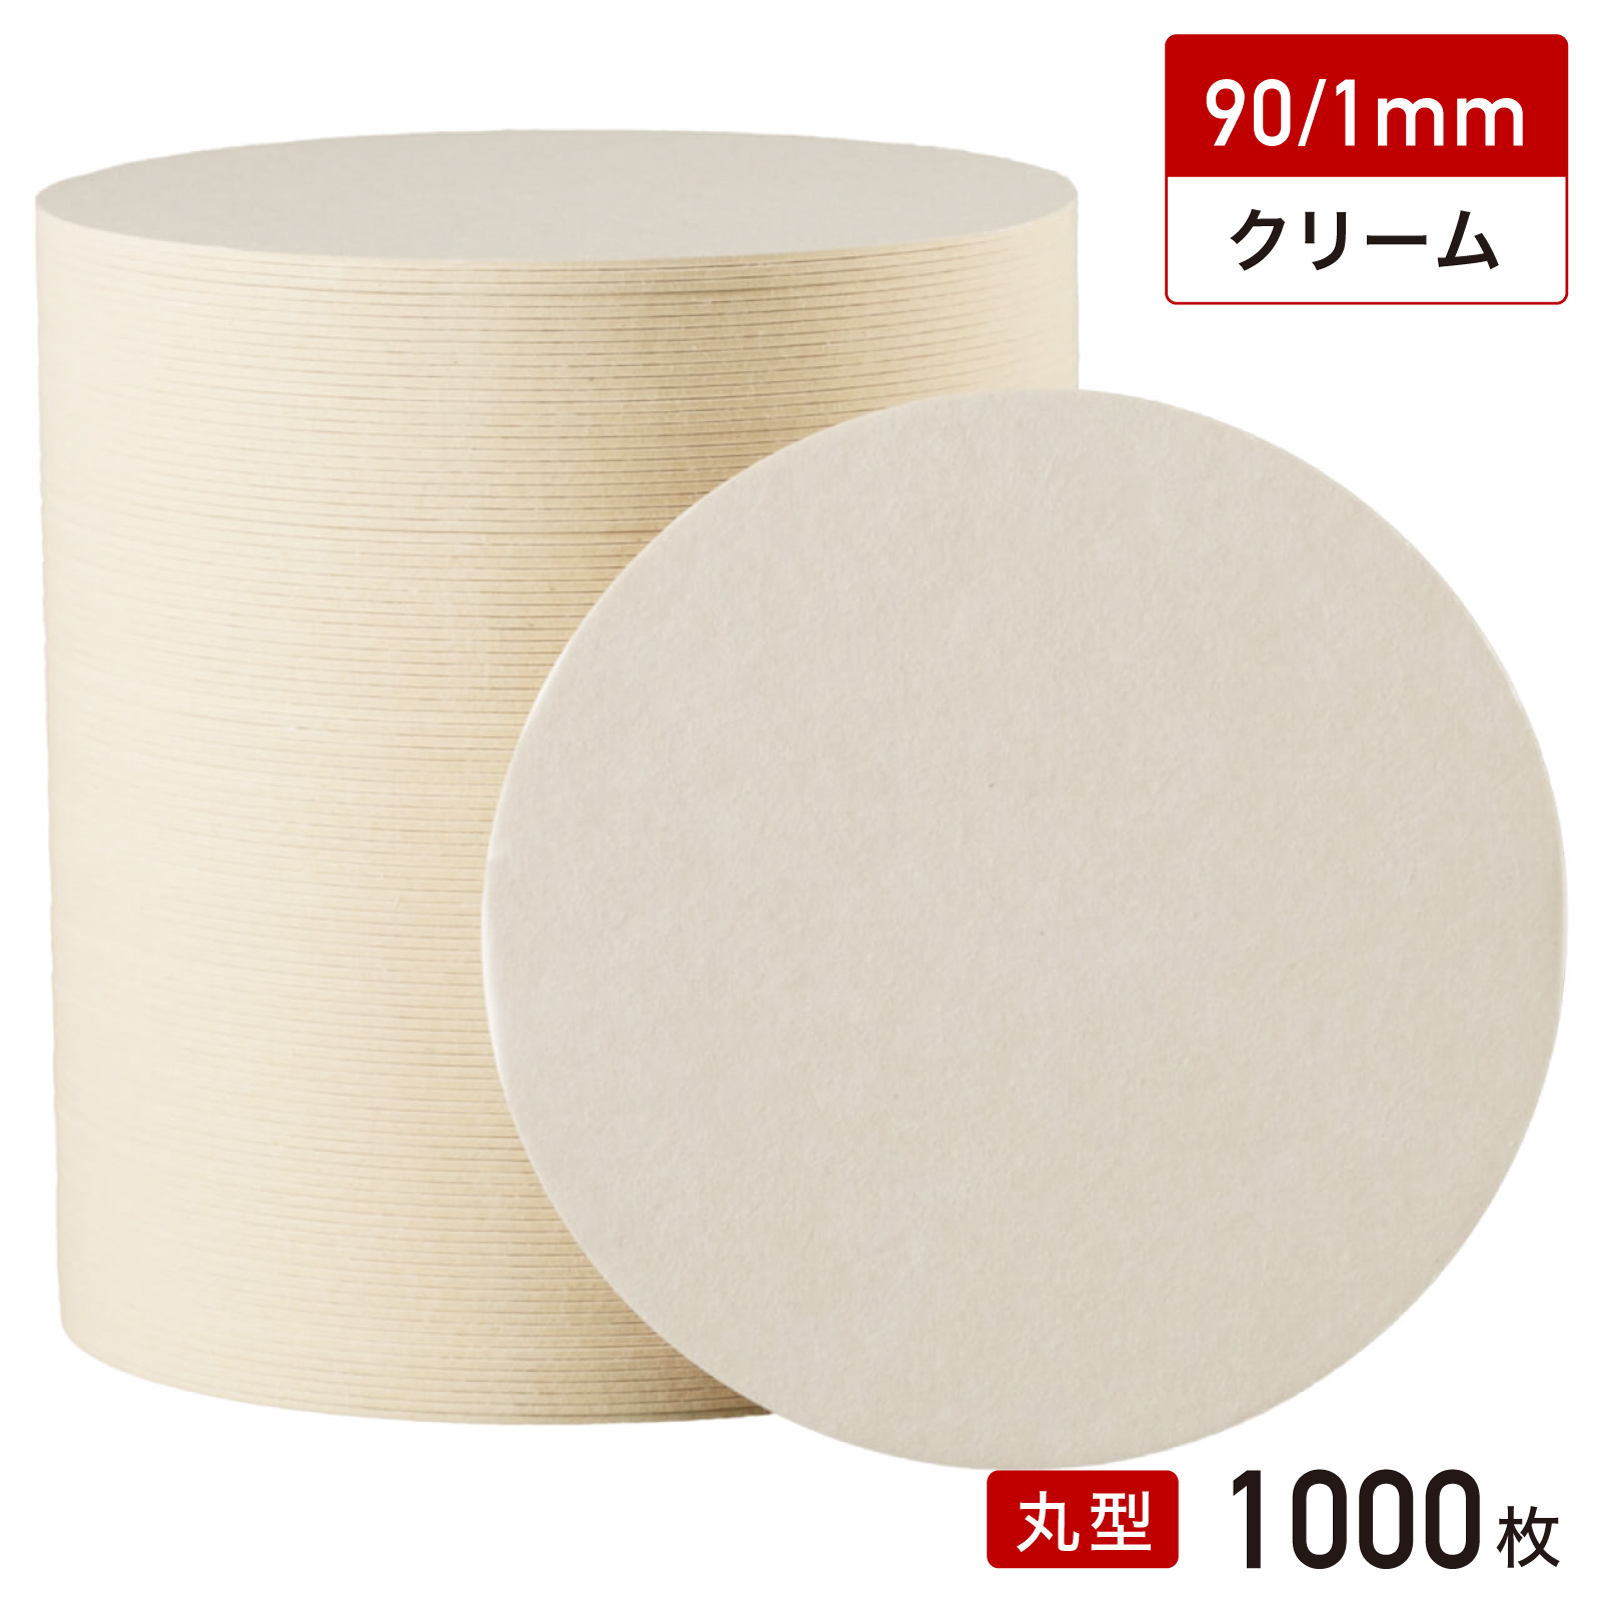 松山 紙 コースター 丸型 90/1mm（クリーム無地）1000枚の商品画像